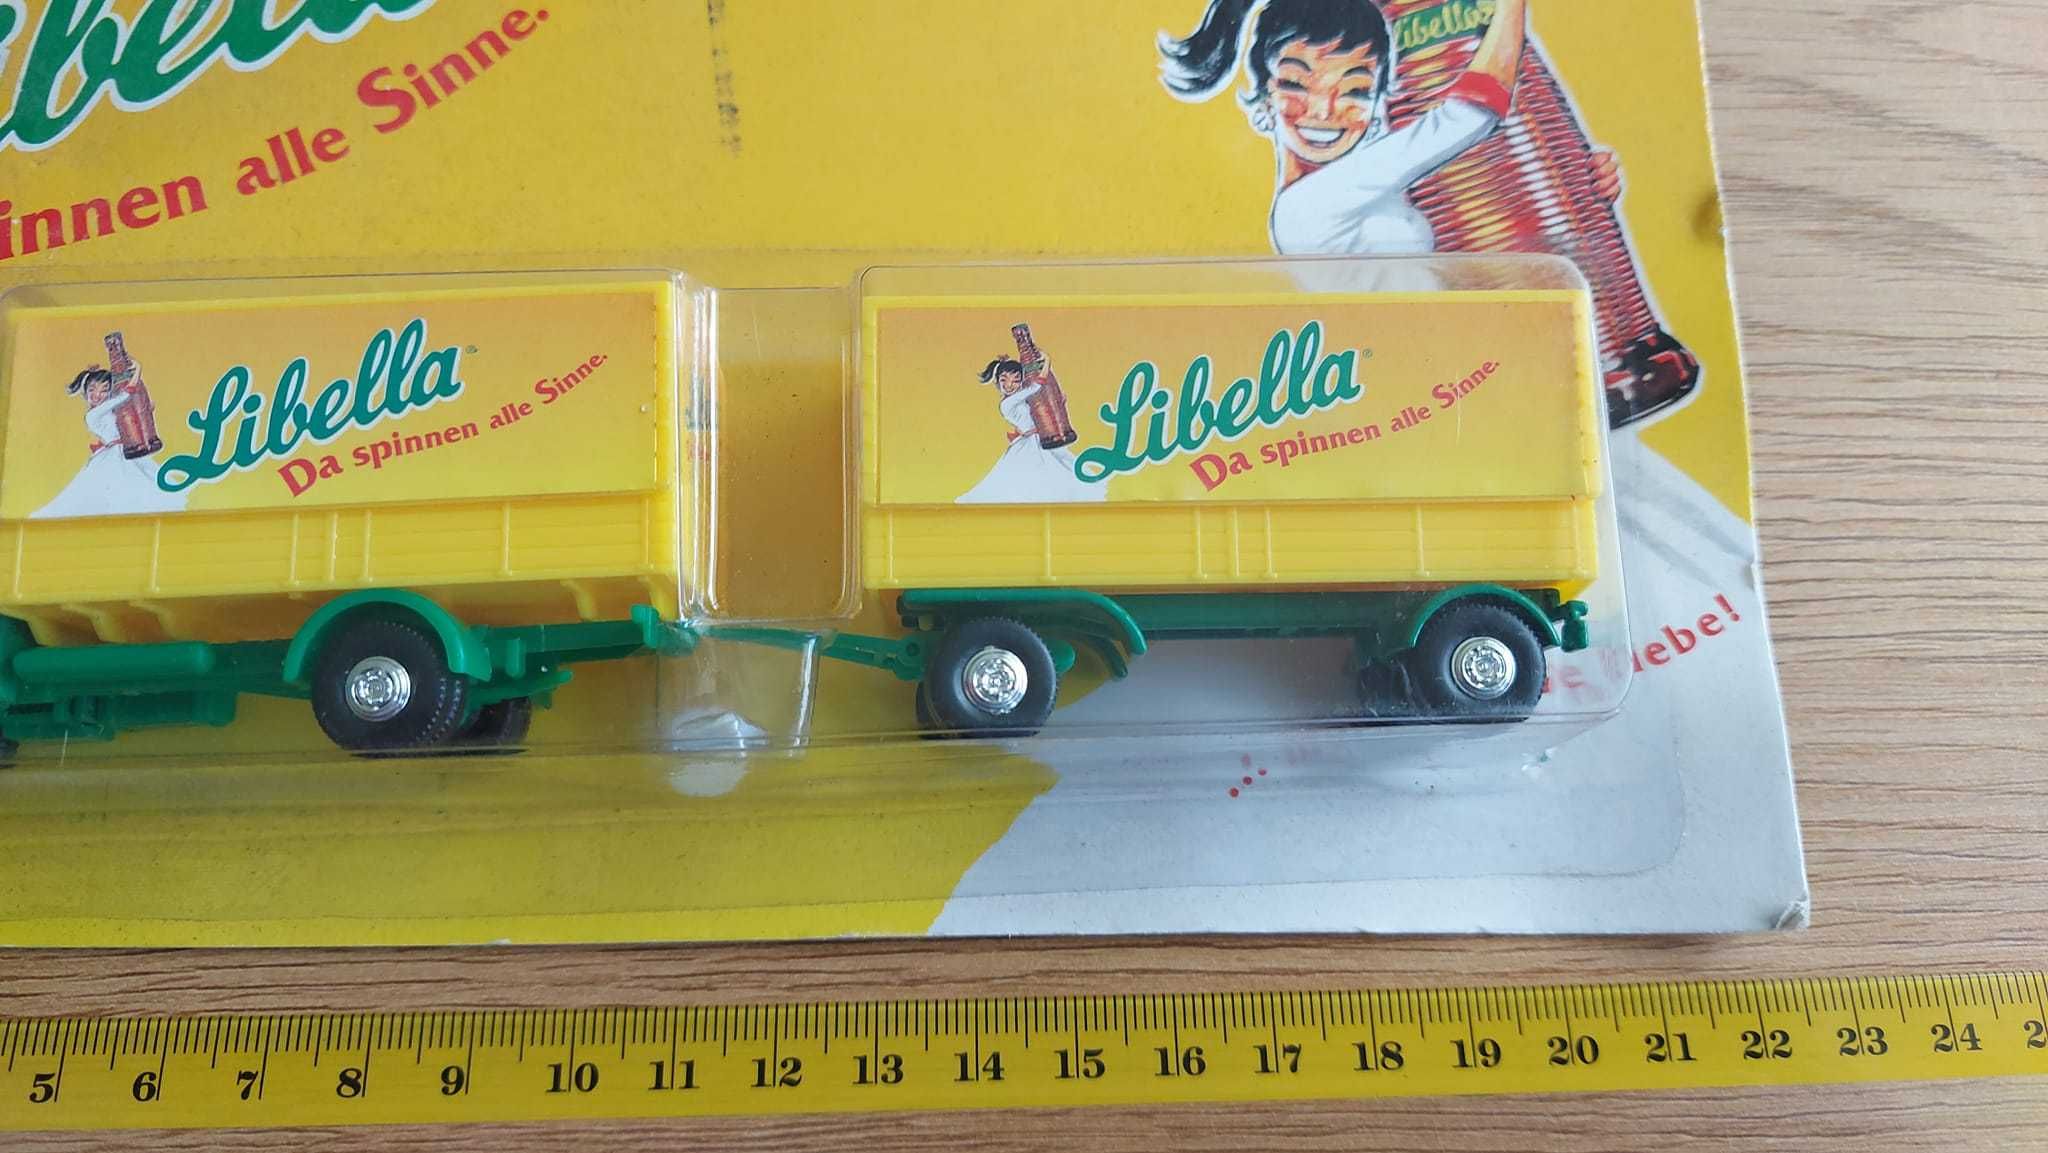 Рекламно камионче LIBELLA. Цена 12лв. Публикувано и на други места